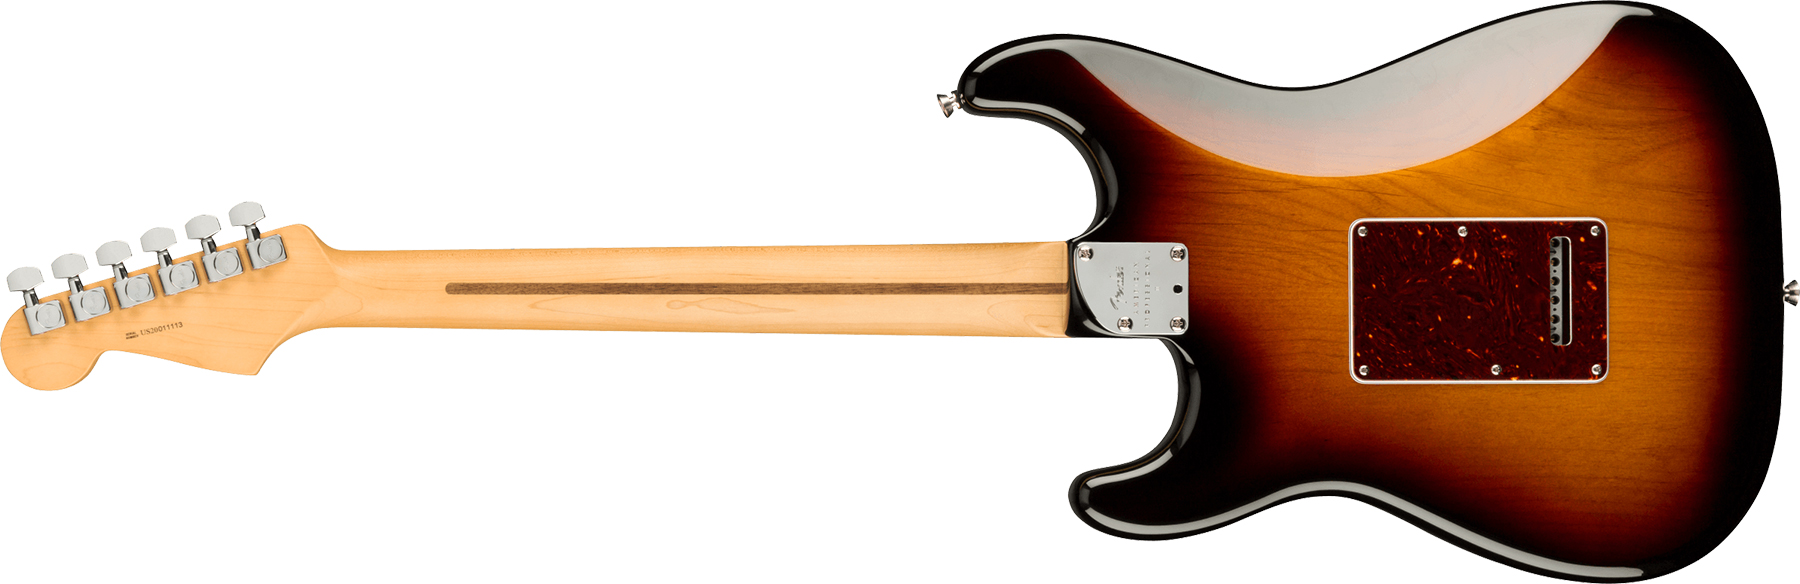 Fender Strat American Professional Ii Usa Mn - 3-color Sunburst - Str shape electric guitar - Variation 1